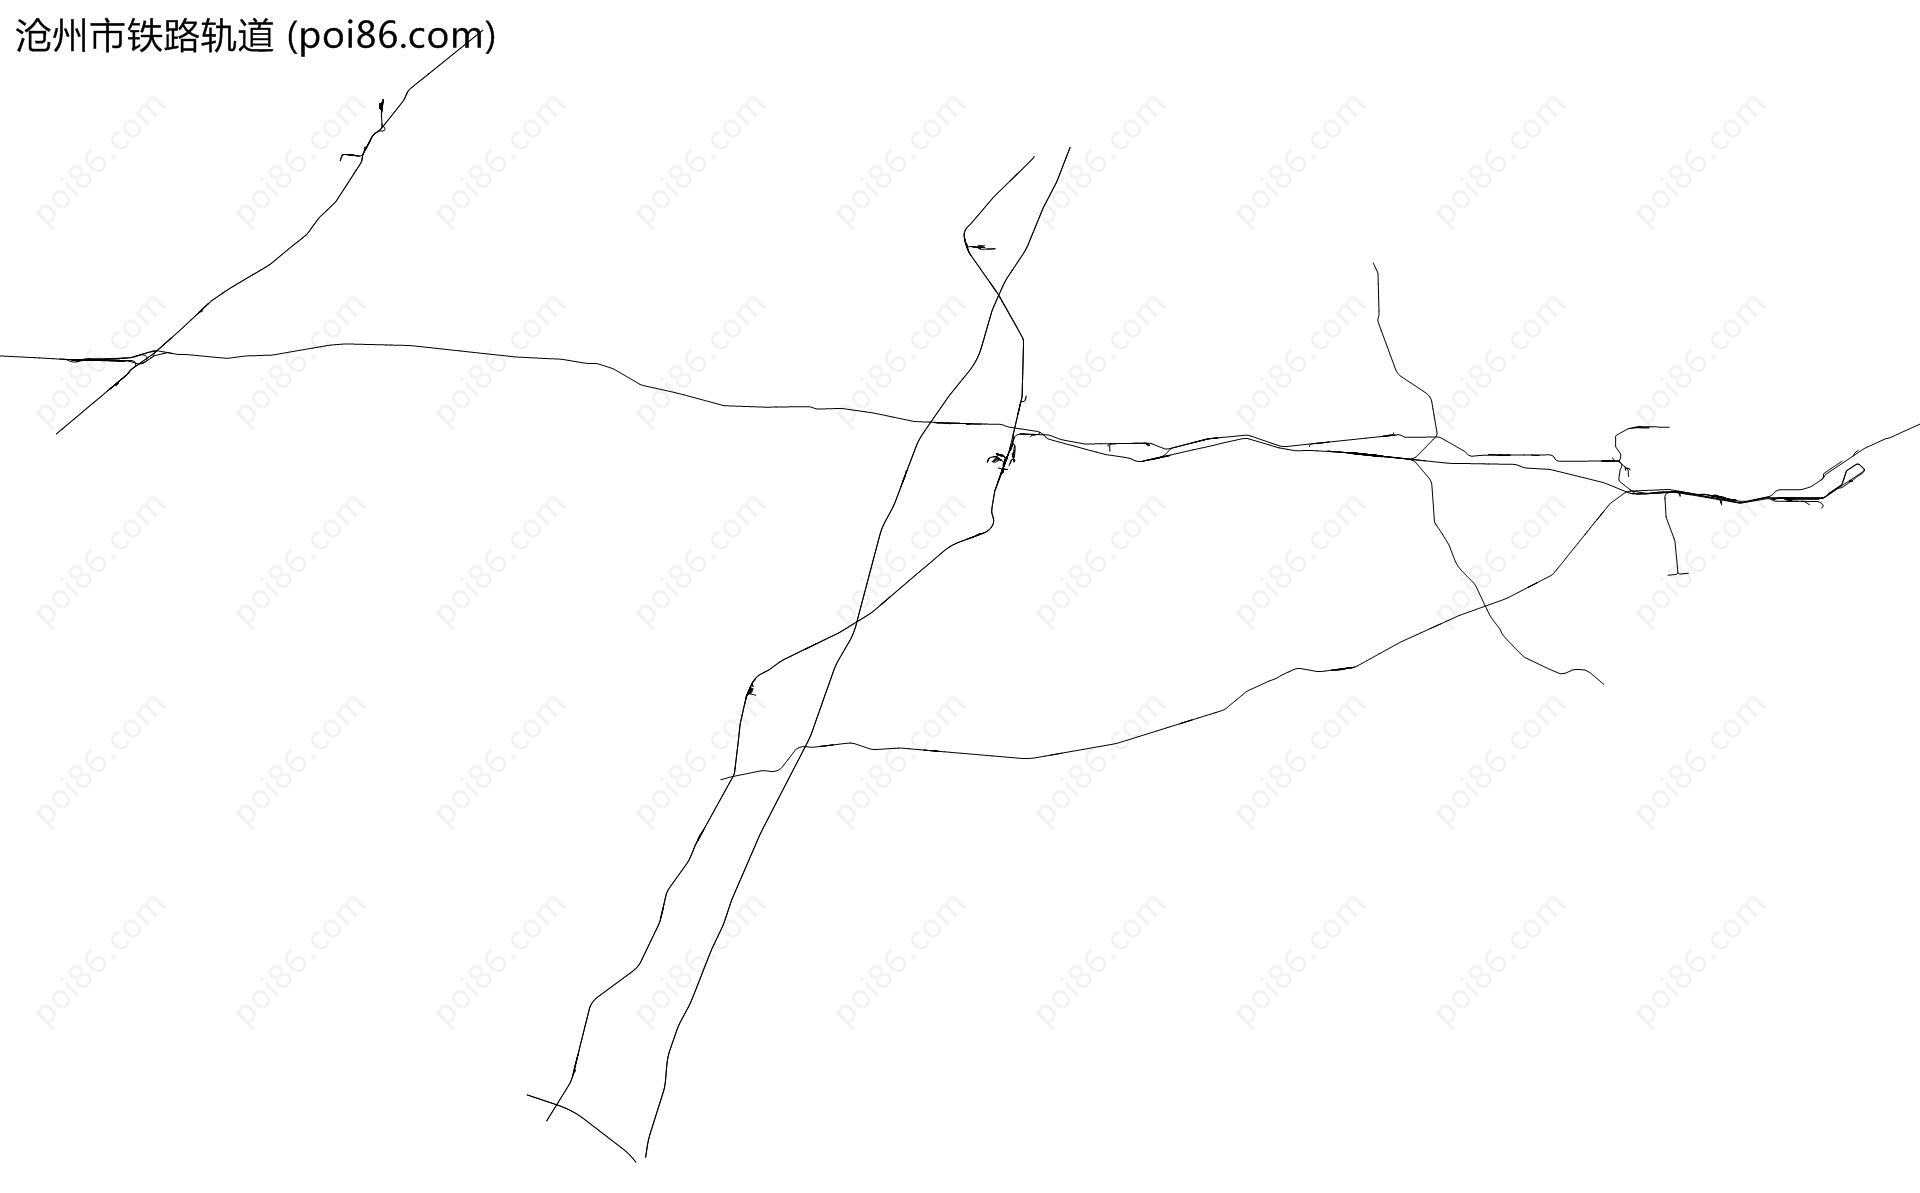 沧州市铁路轨道地图